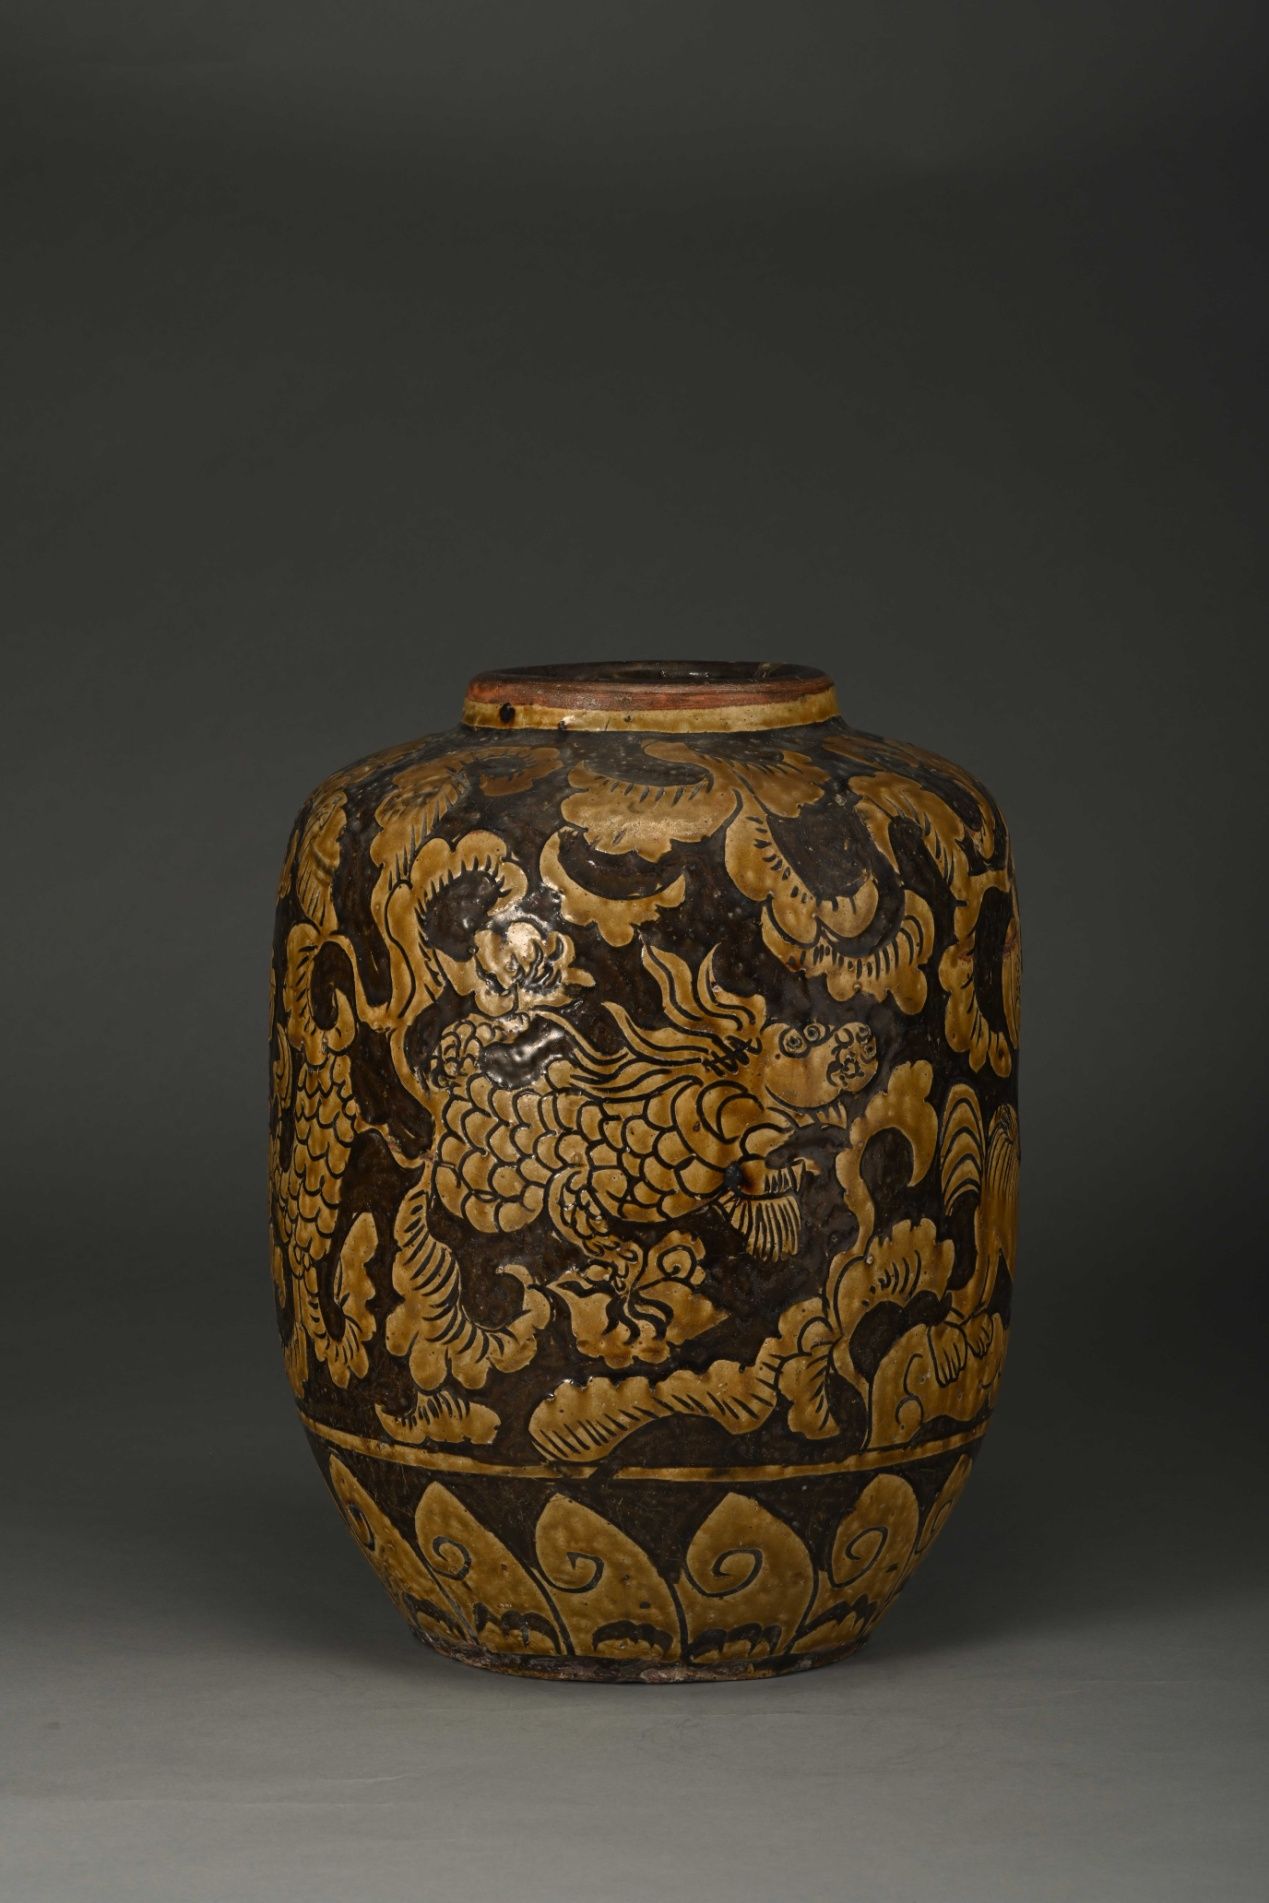 刘敦义捐赠马口窑陶器,美术作品展在武汉博物馆开展